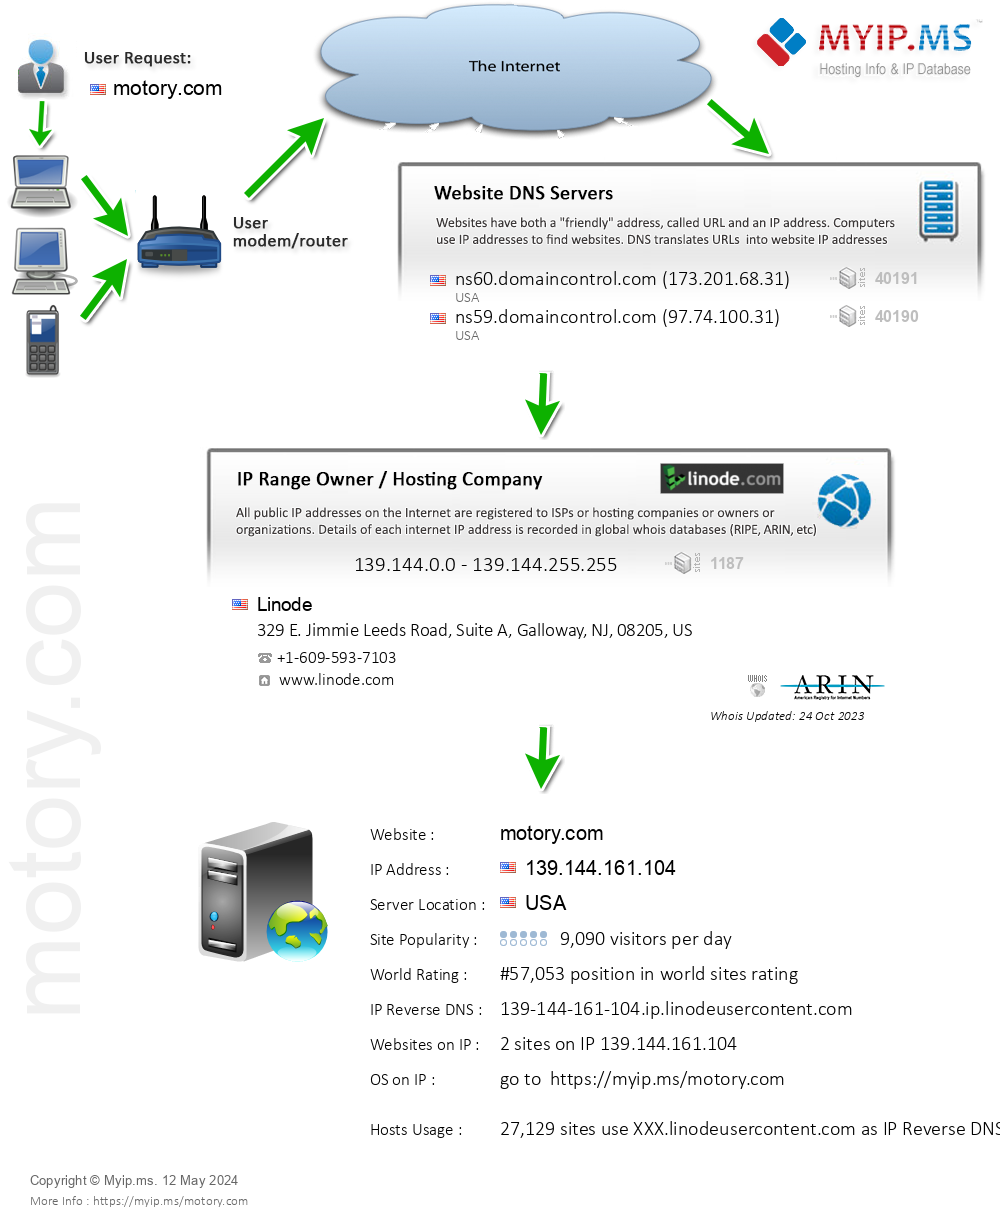 Motory.com - Website Hosting Visual IP Diagram